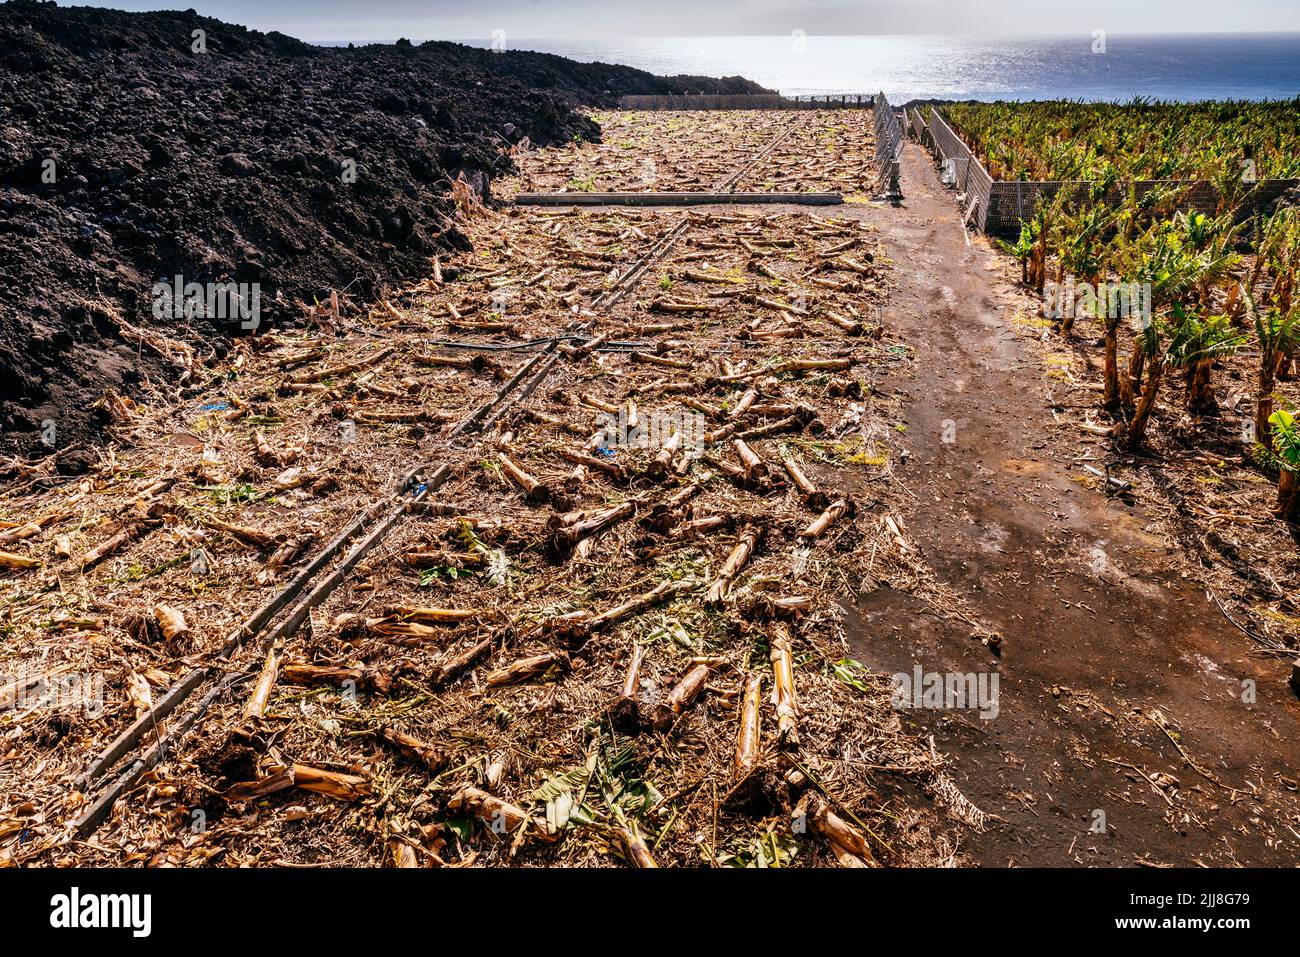 Piantagione di banane delle Canarie distrutta dal flusso di lava. Distruzione causata dal fiume di lava nella valle di Aridane. La Palma, Isole Canarie, Spagna Foto Stock